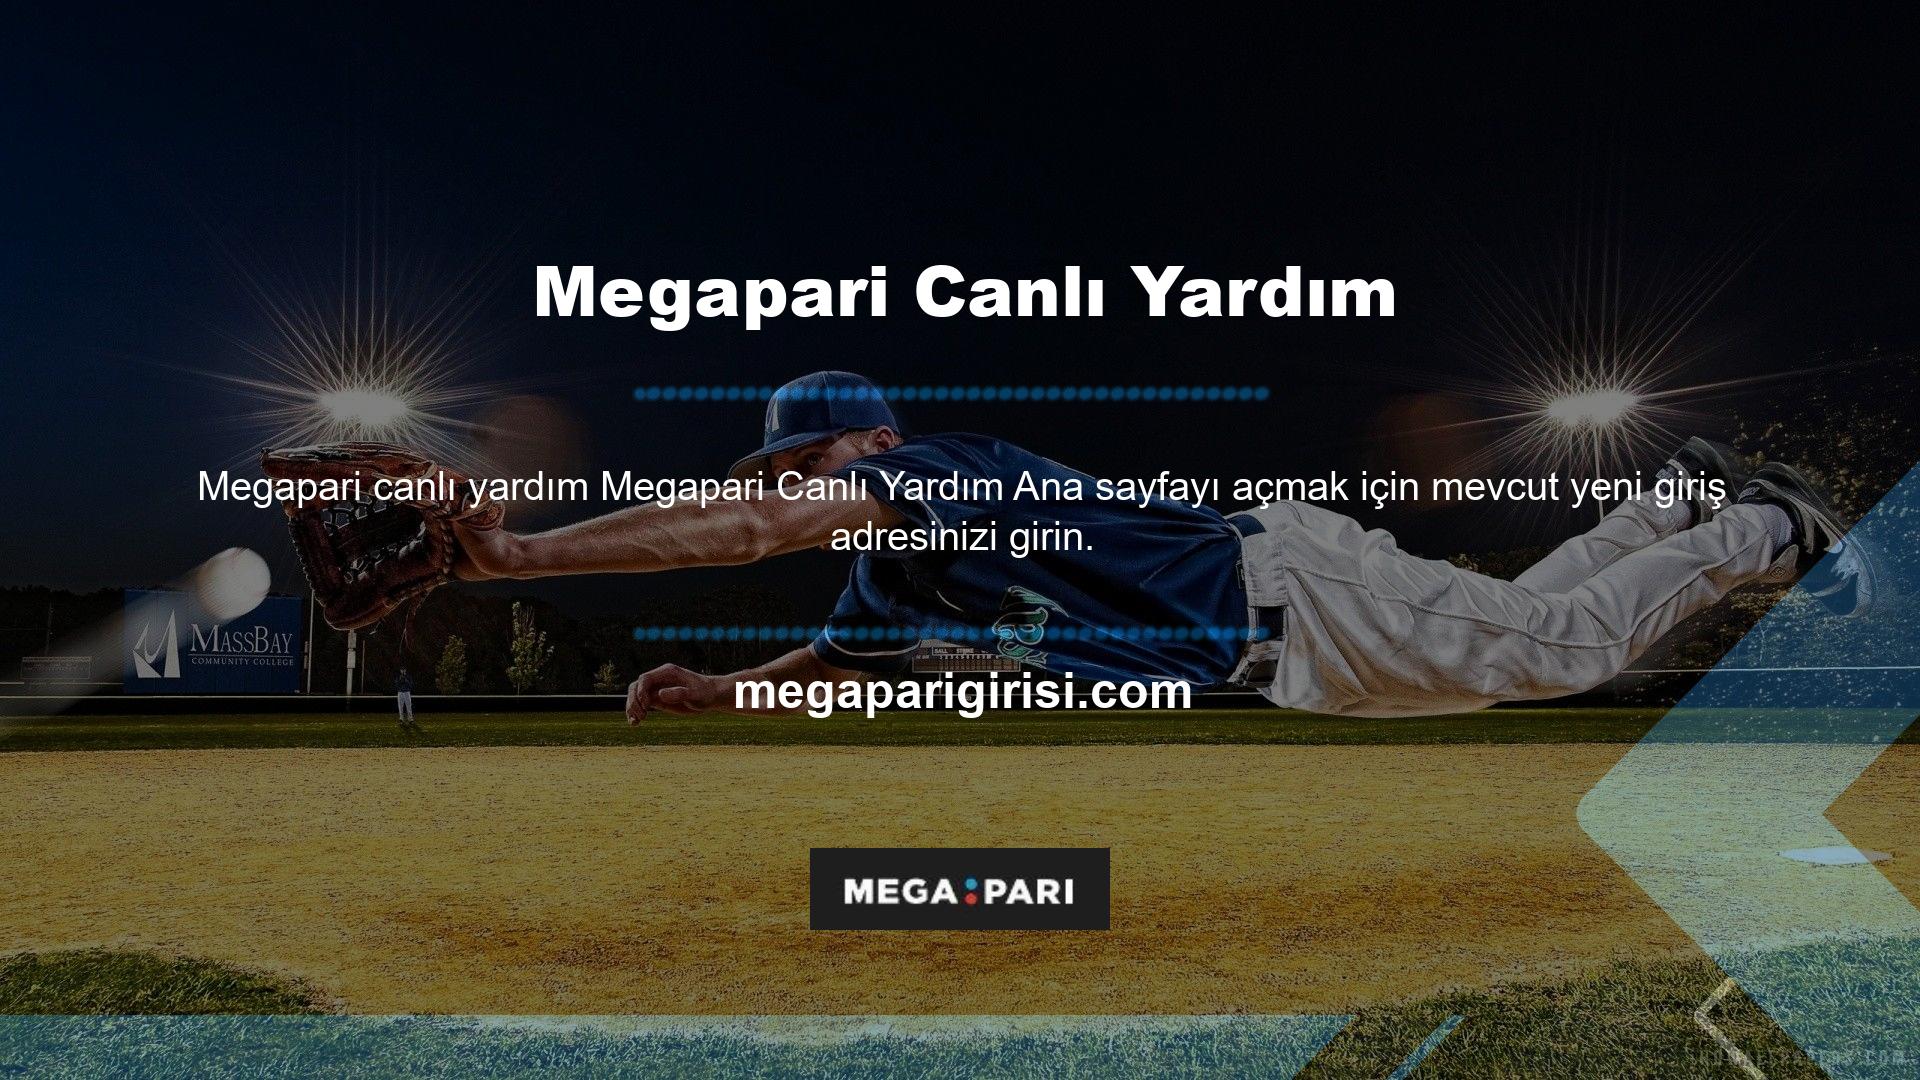 Ana sayfayı açtıktan sonra Megapari canlı yardımına nasıl ulaşabilirim Türkiye'den Canlı Destek şeklinde basılan mavi butondur